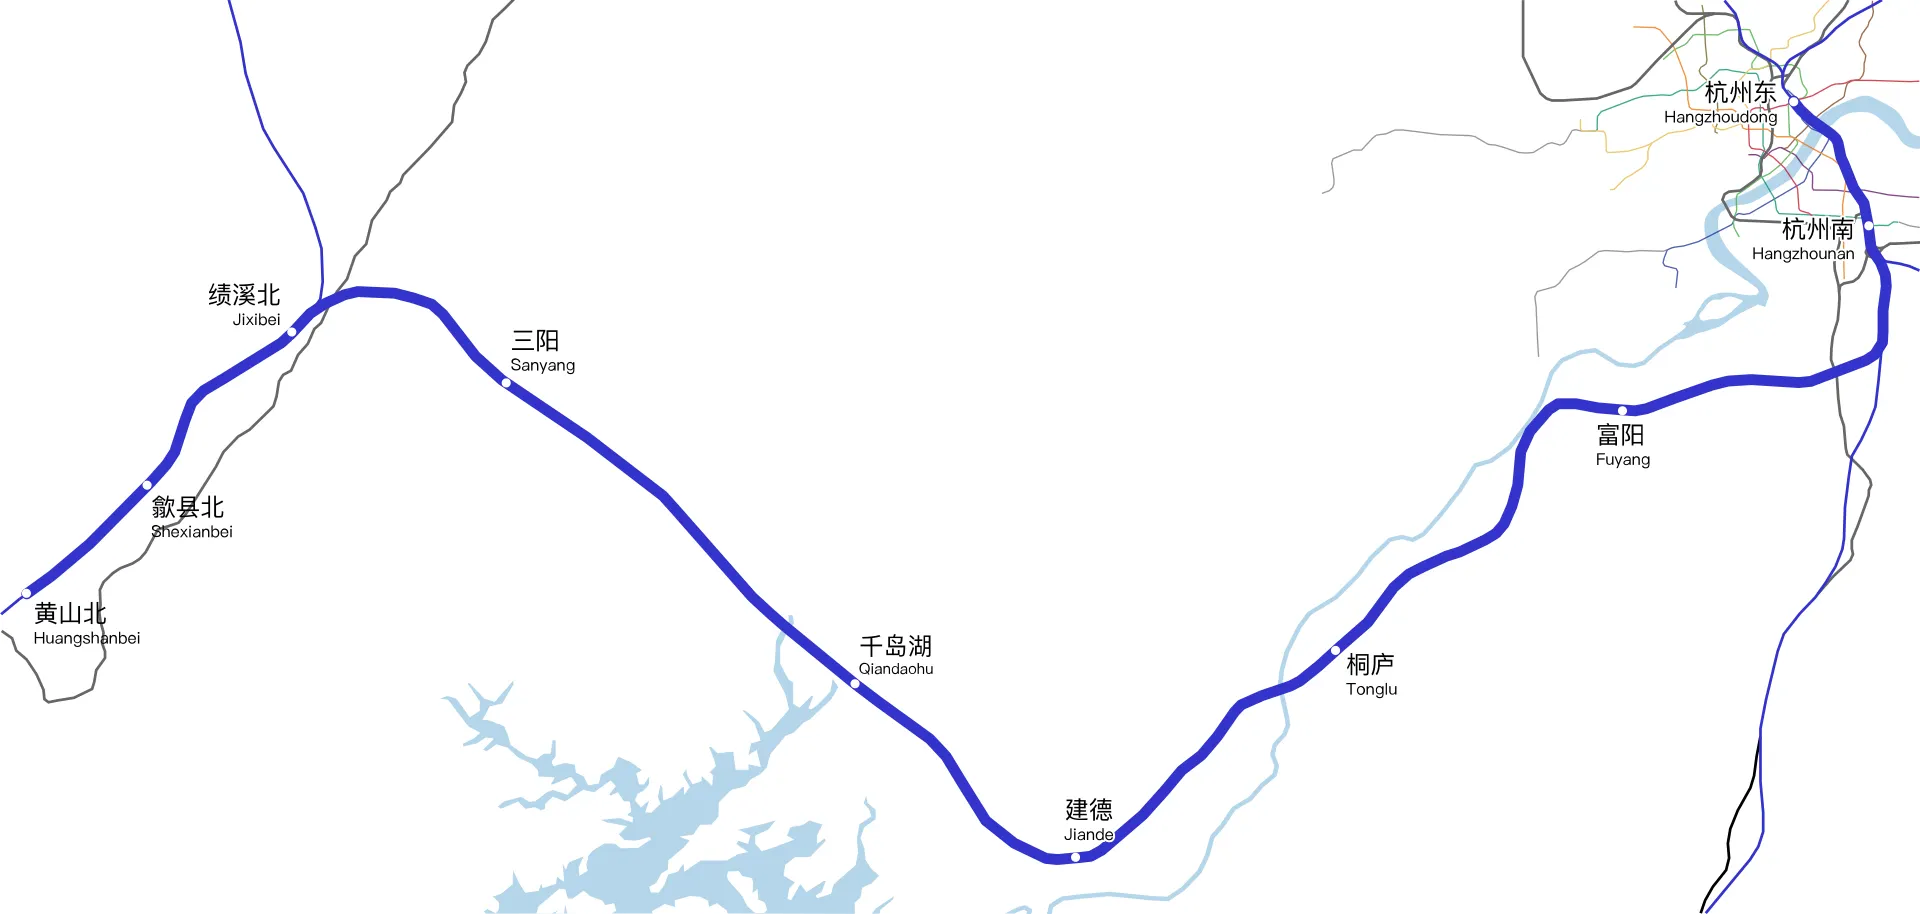 Hangzhou-Huangshan High-Speed Railway